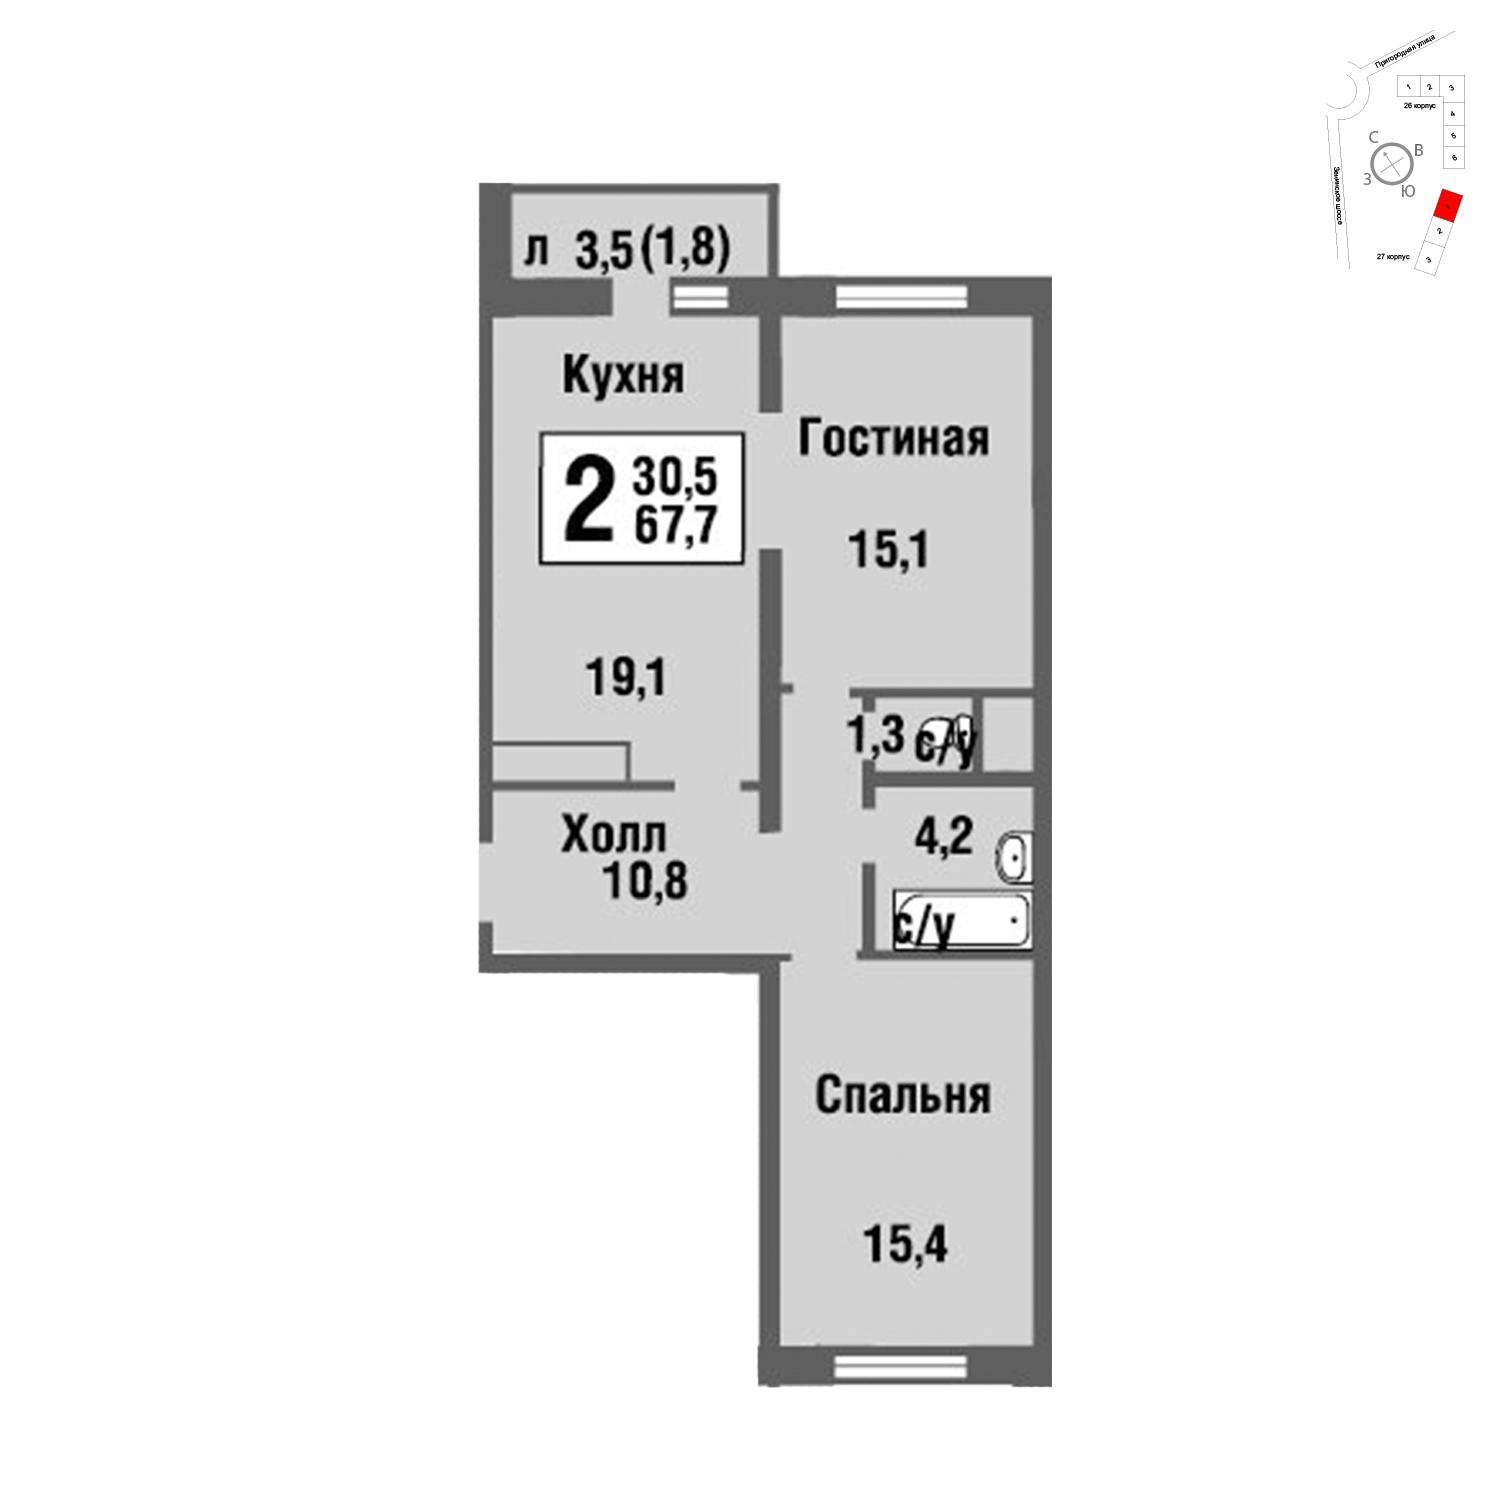 Продаётся 2-комнатная квартира в новостройке 67.8 кв.м. этаж 21/22 за 6 379 980 руб 